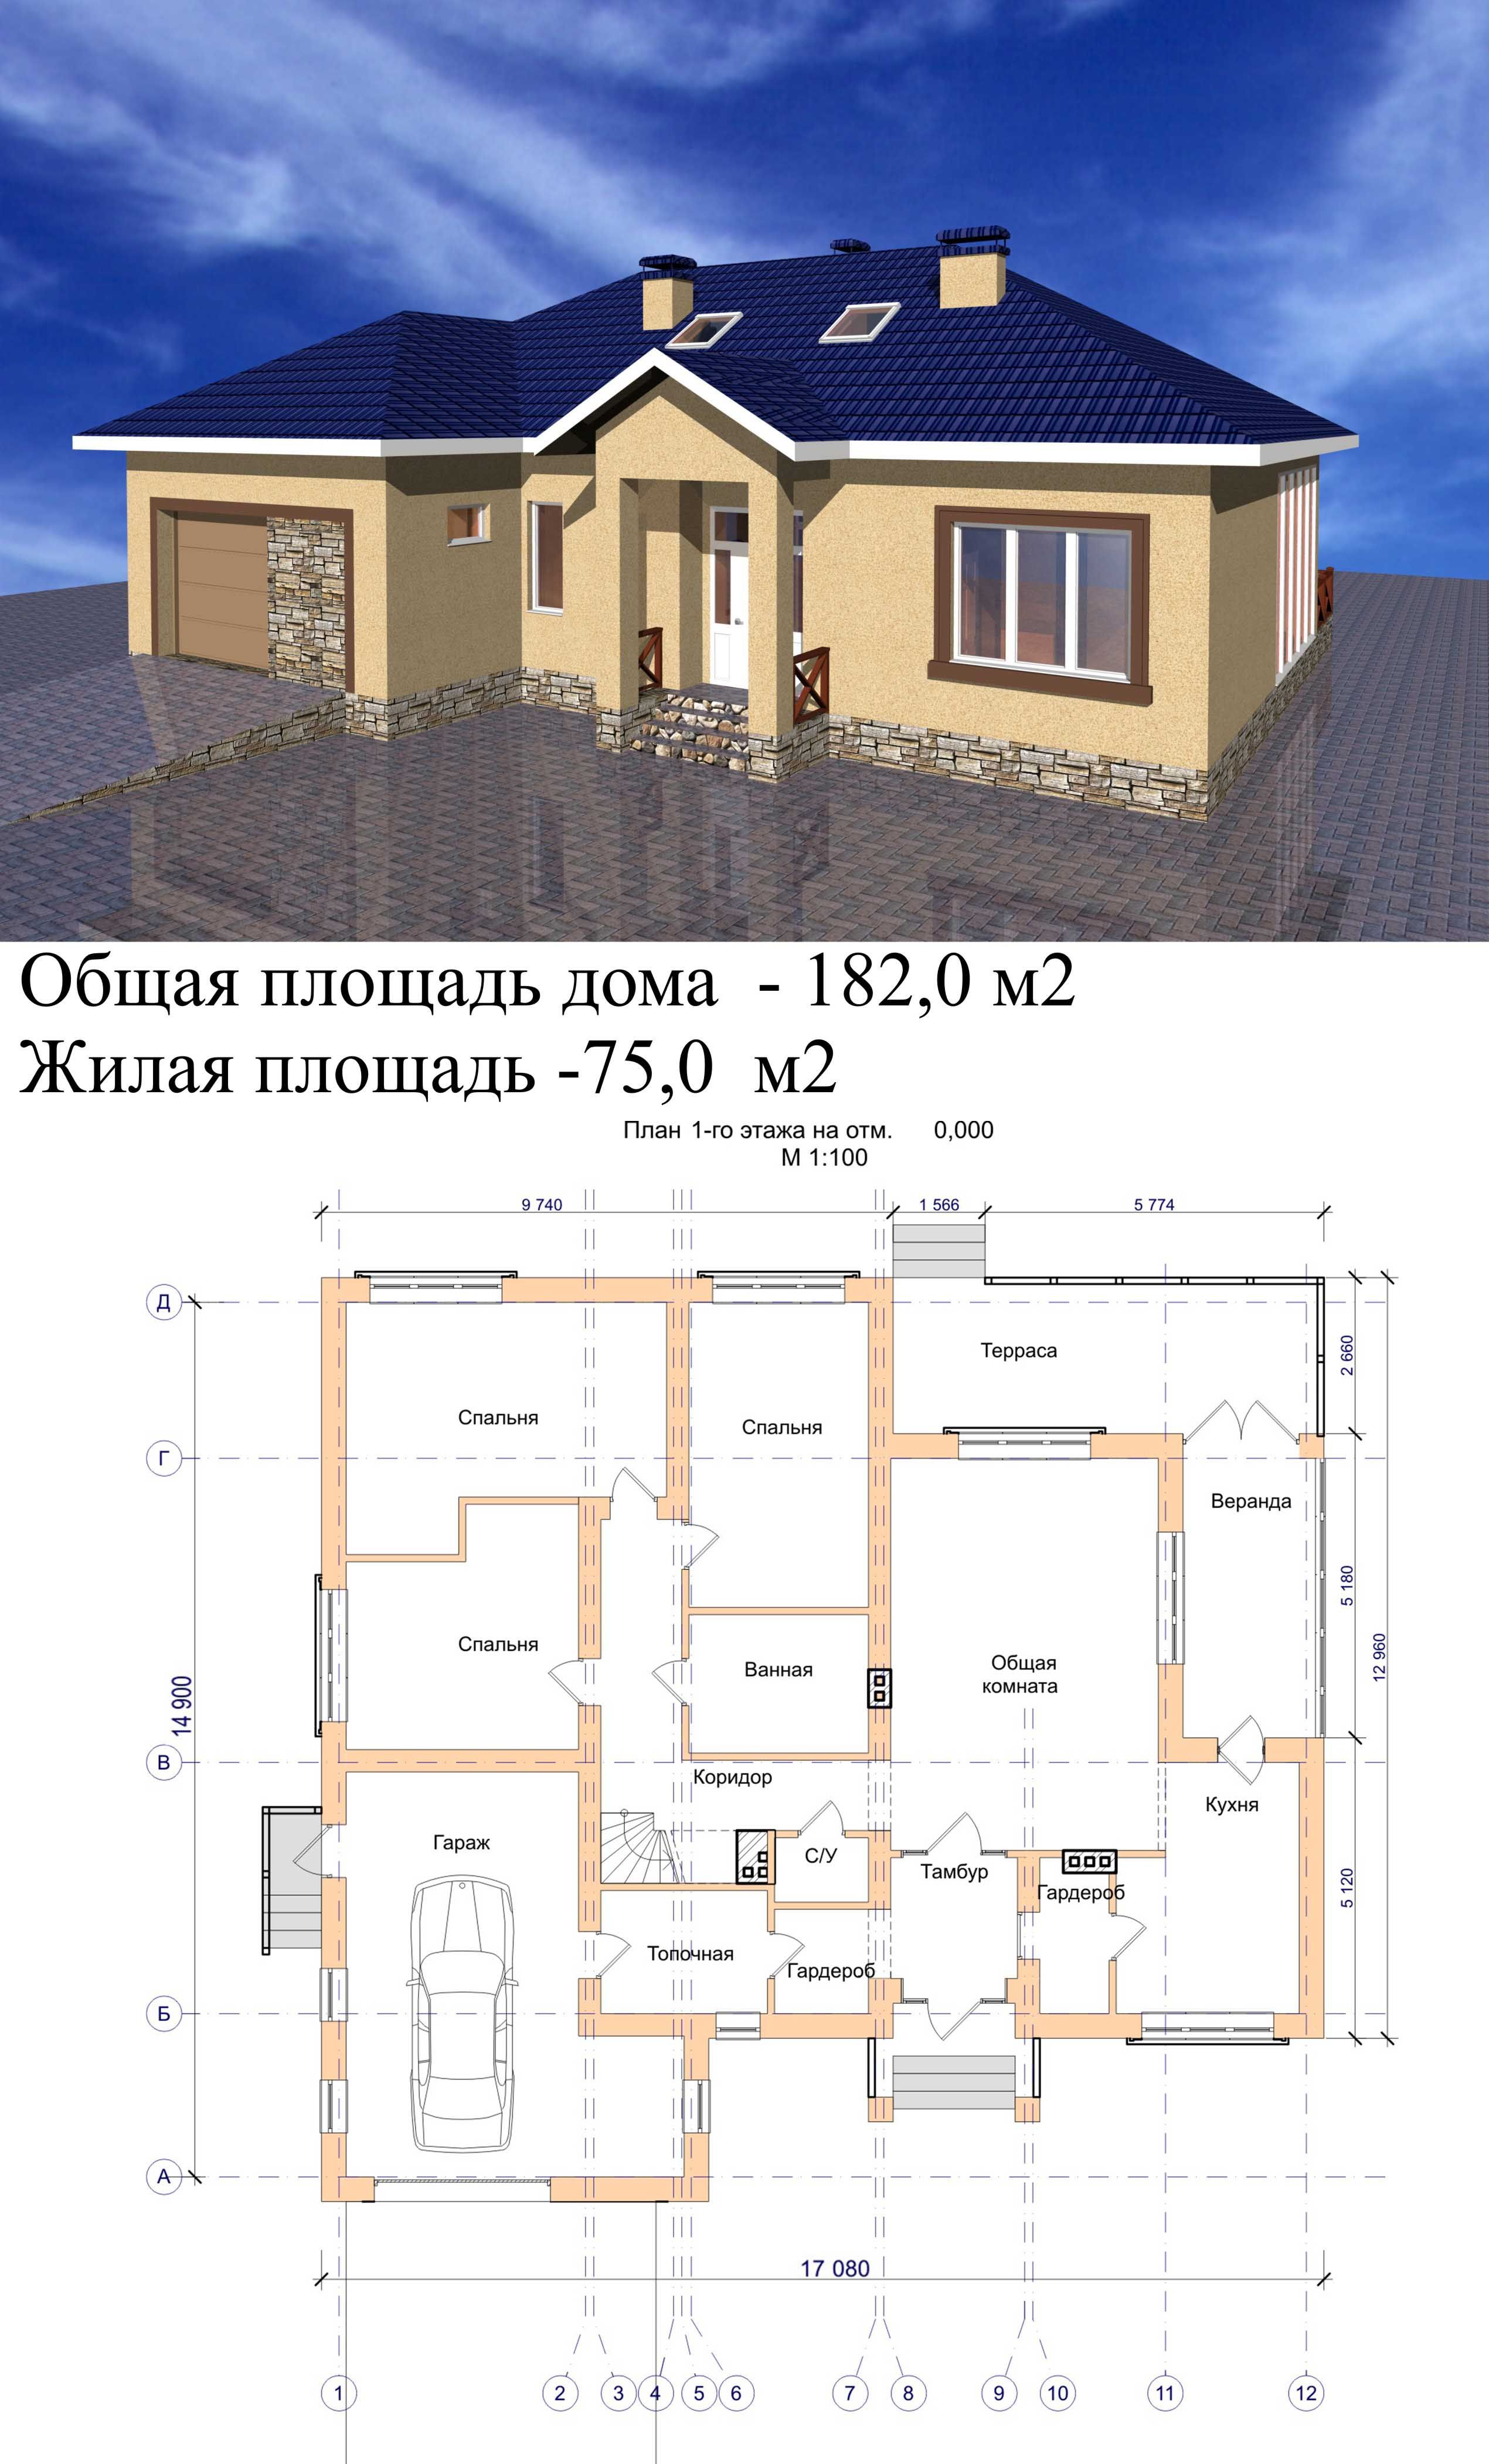 Картинки дома план дома: D0 bf d0 bb d0 b0 d0 bd d0 b4 d0 be d0 bc d0 b0: стоковые фото, изображения